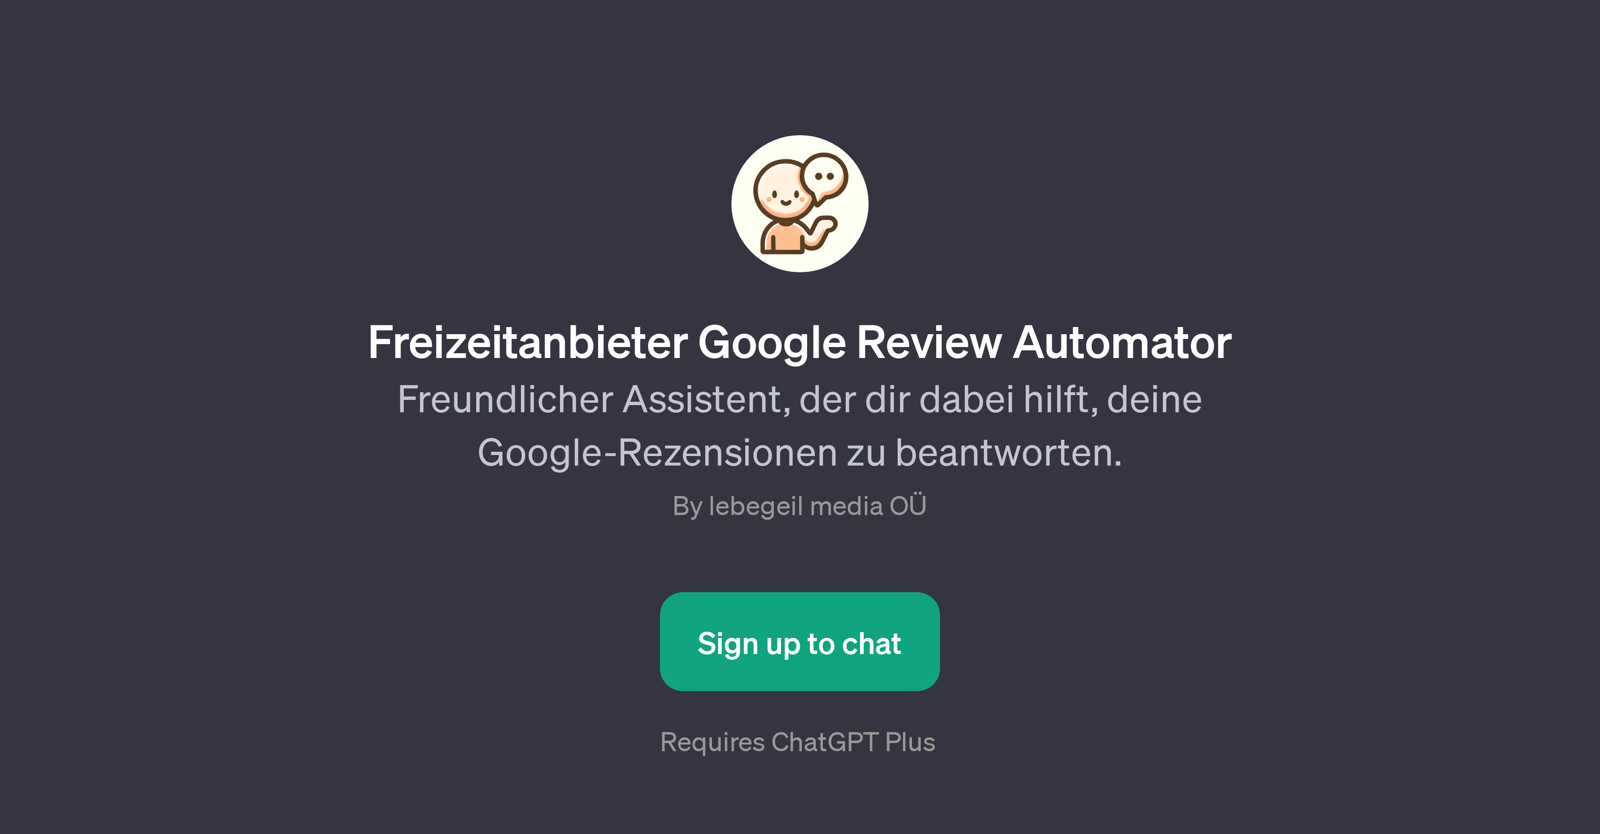 Freizeitanbieter Google Review Automator website